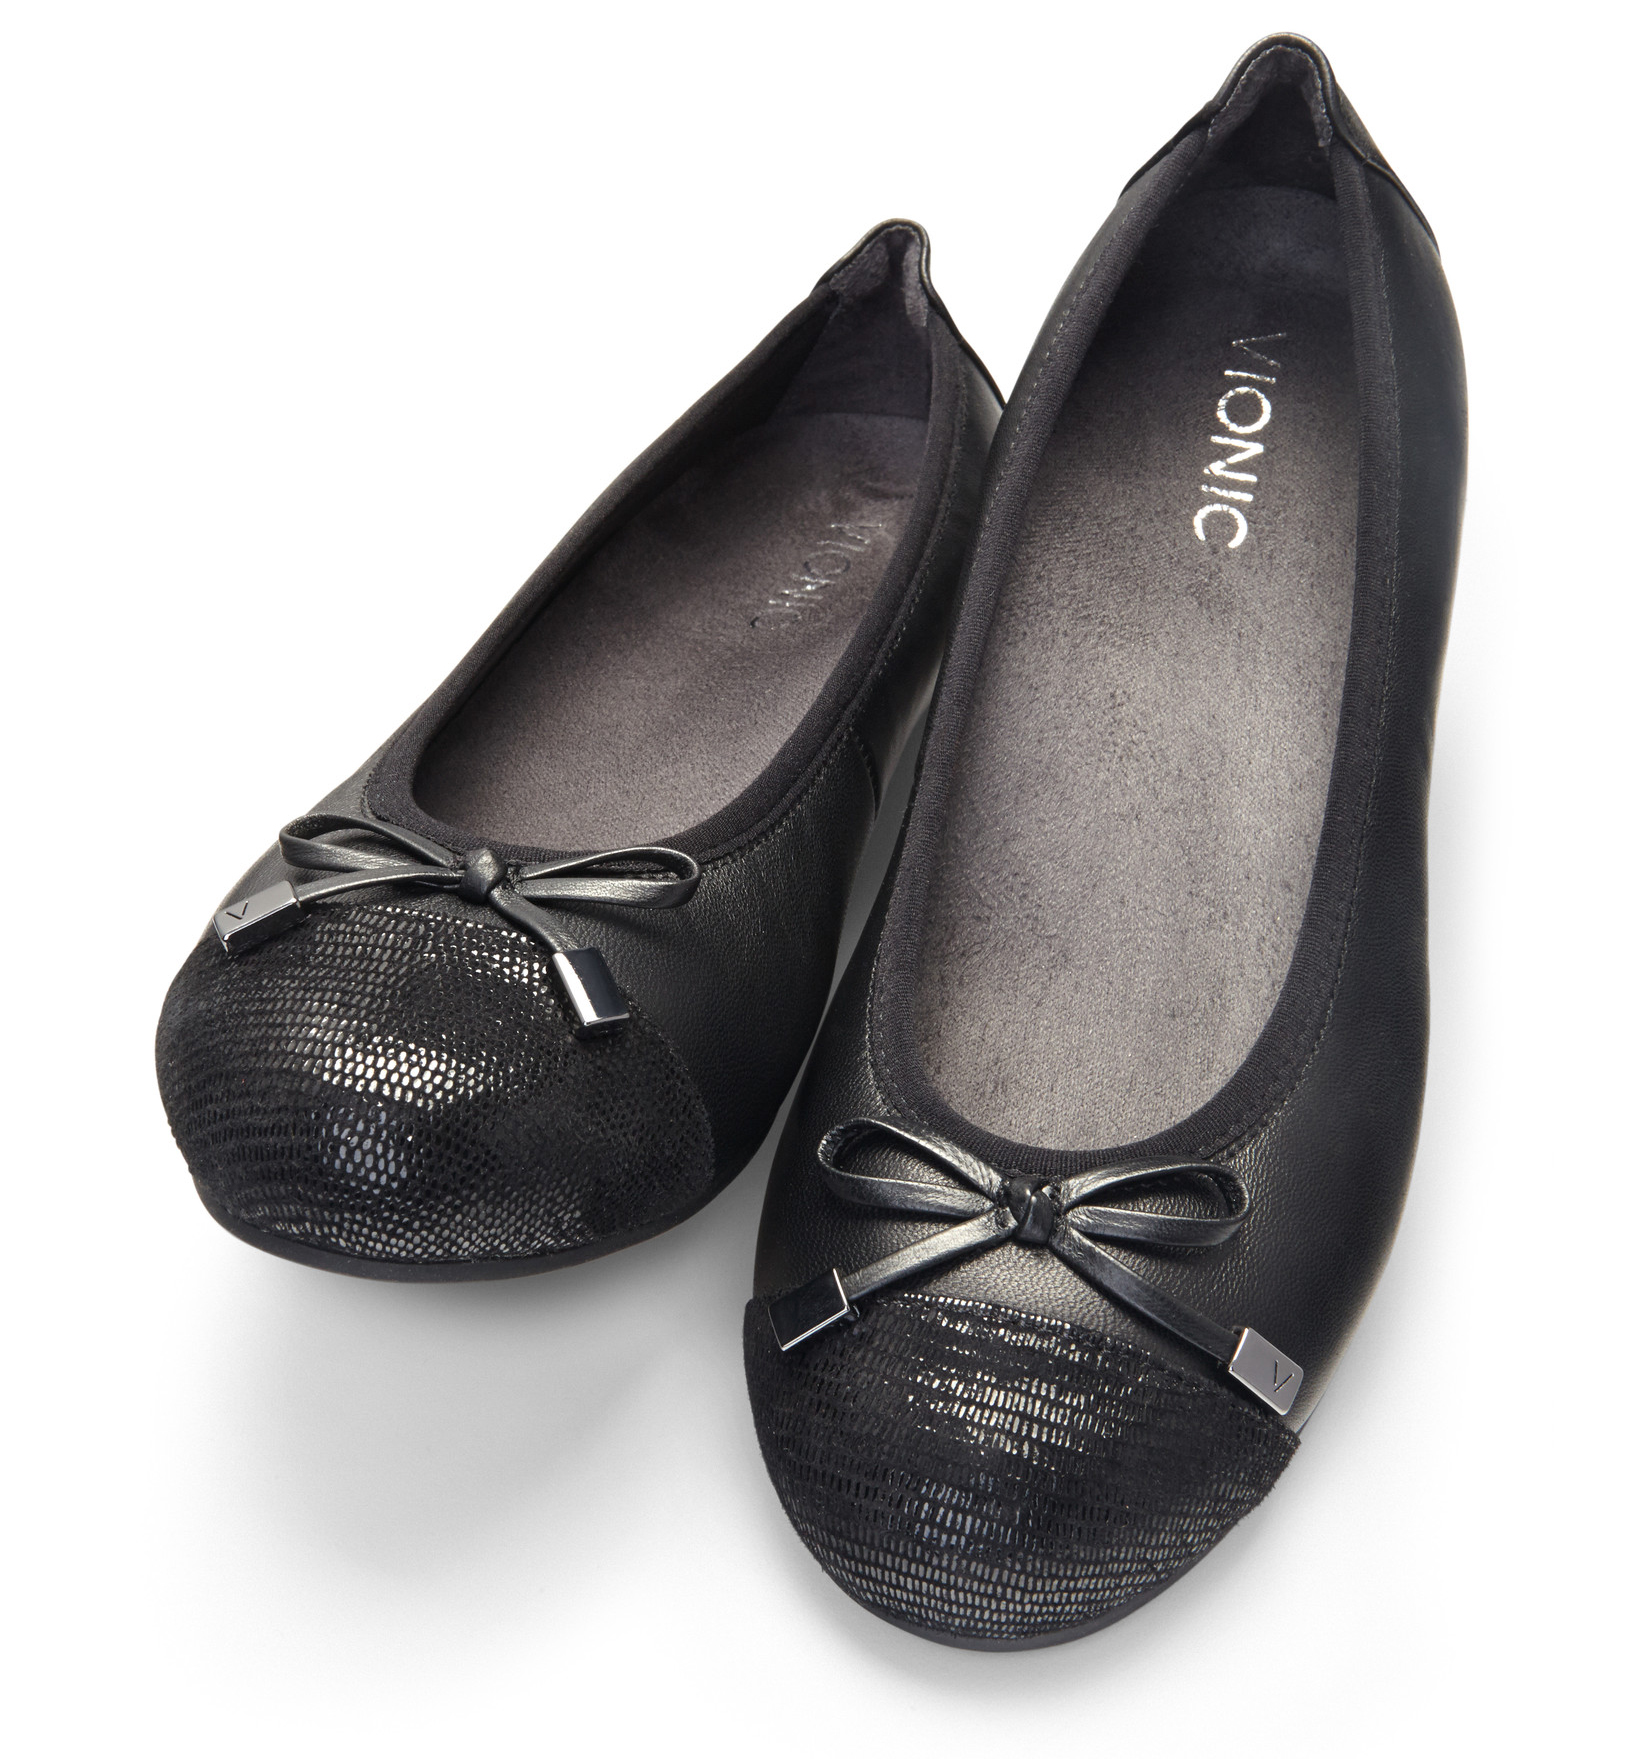 vionic womens shoes flats